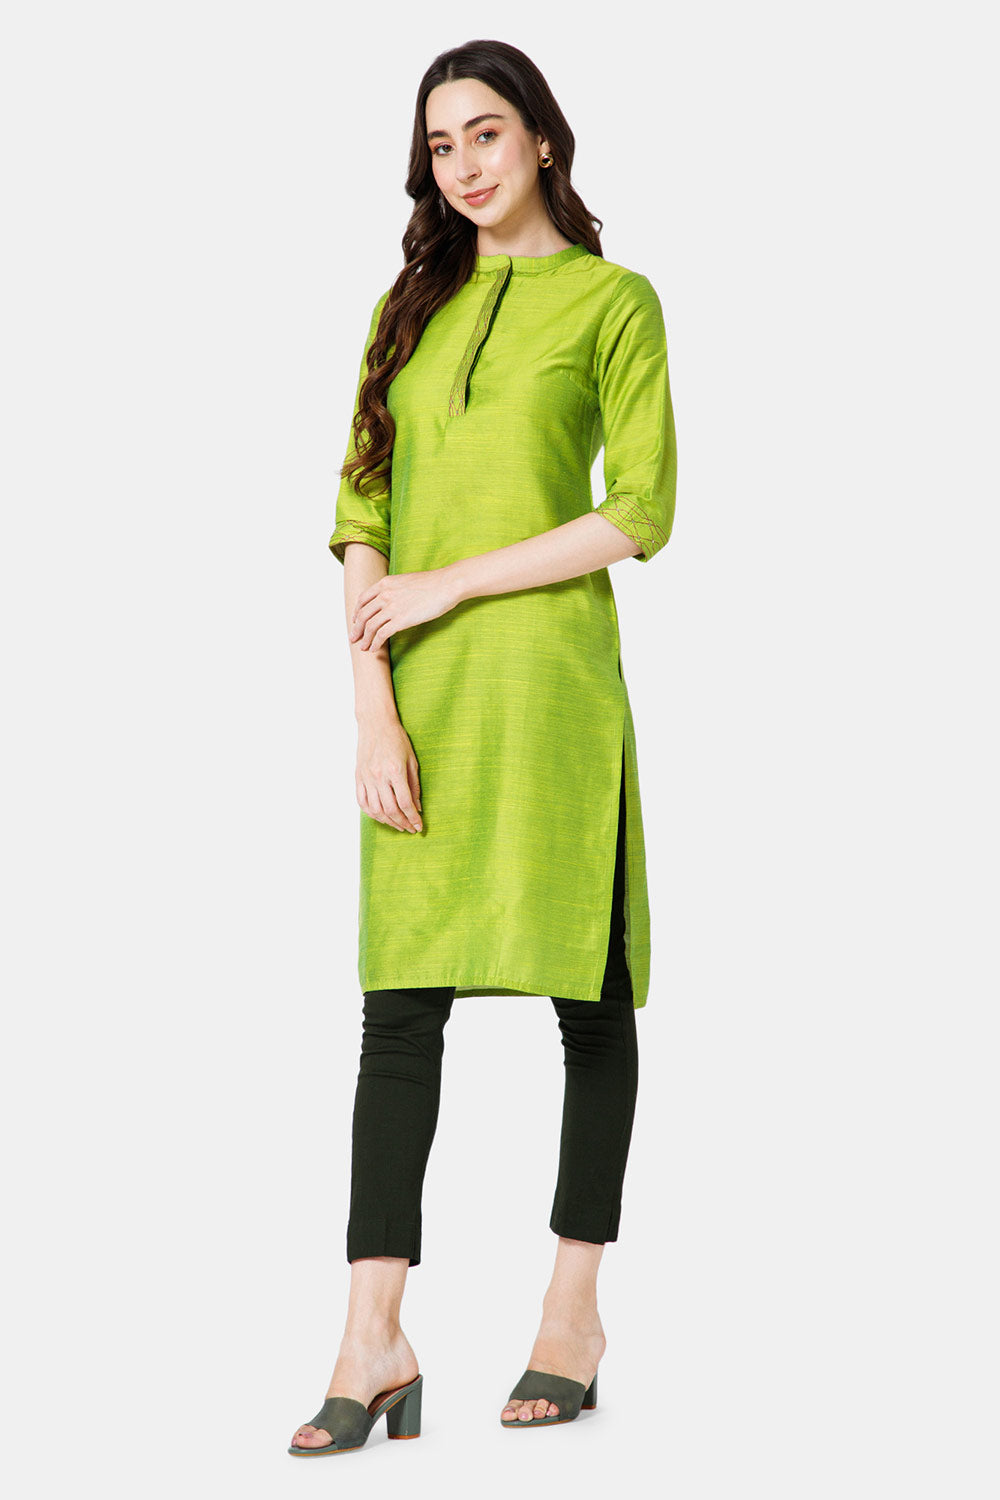 Mythri Women's Ethnic Wear Mandarin collar 3/4 sleeve straight cut Kurti - Green - KU43